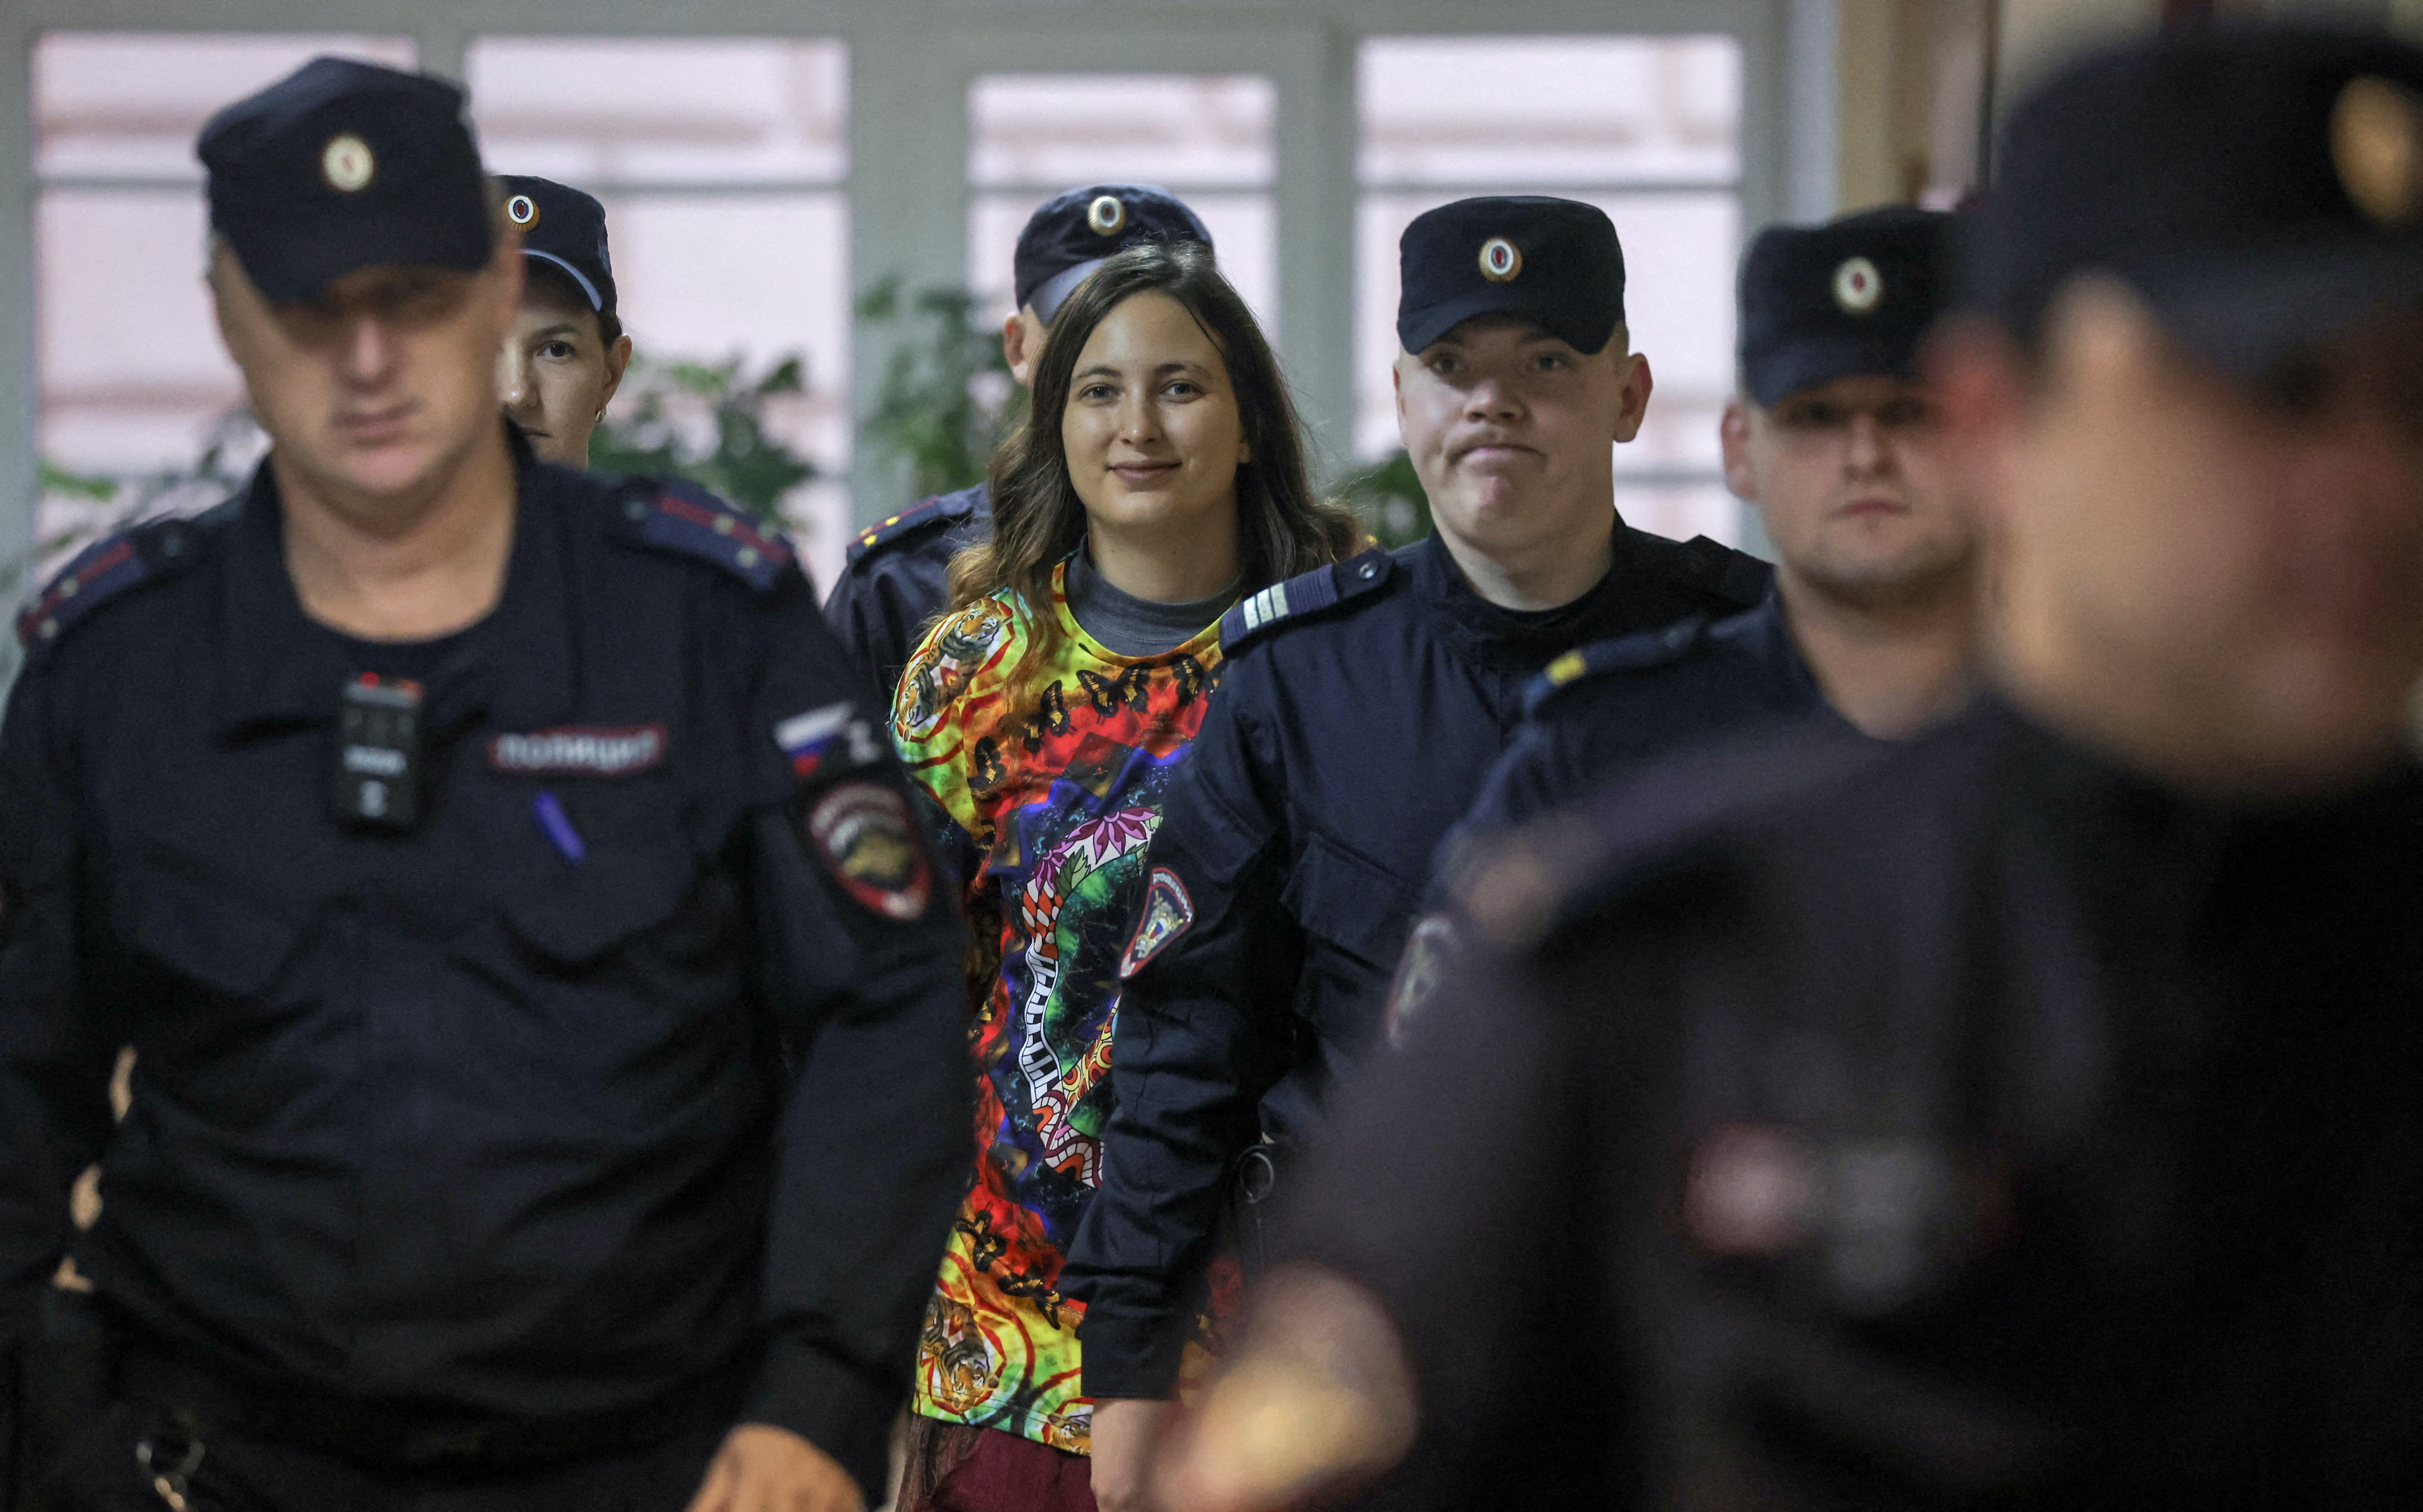 El artista Skoshilenko, acusado de difamar al ejército ruso, comparece ante el tribunal